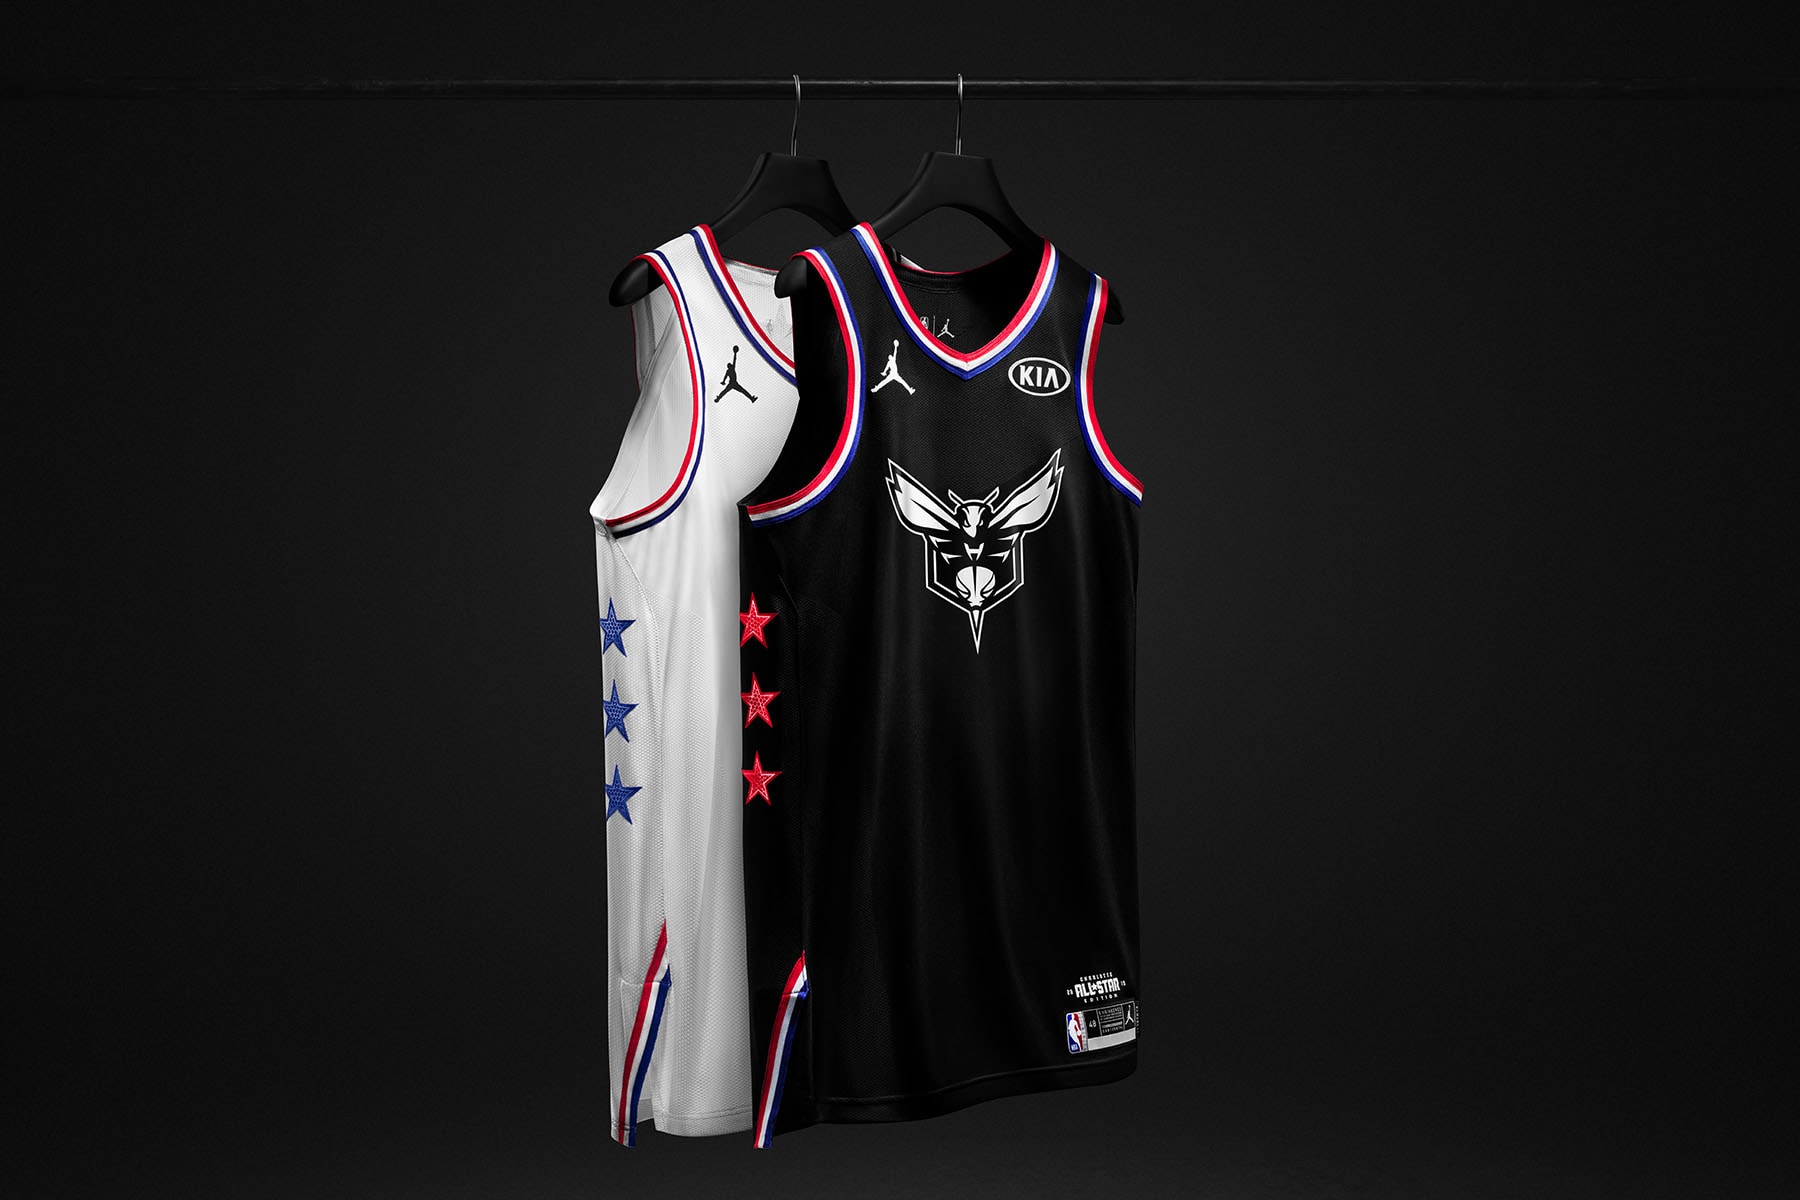 ジョーダン ブランド Jordan Brand が2019年の NBA オールスターユニフォームを発表